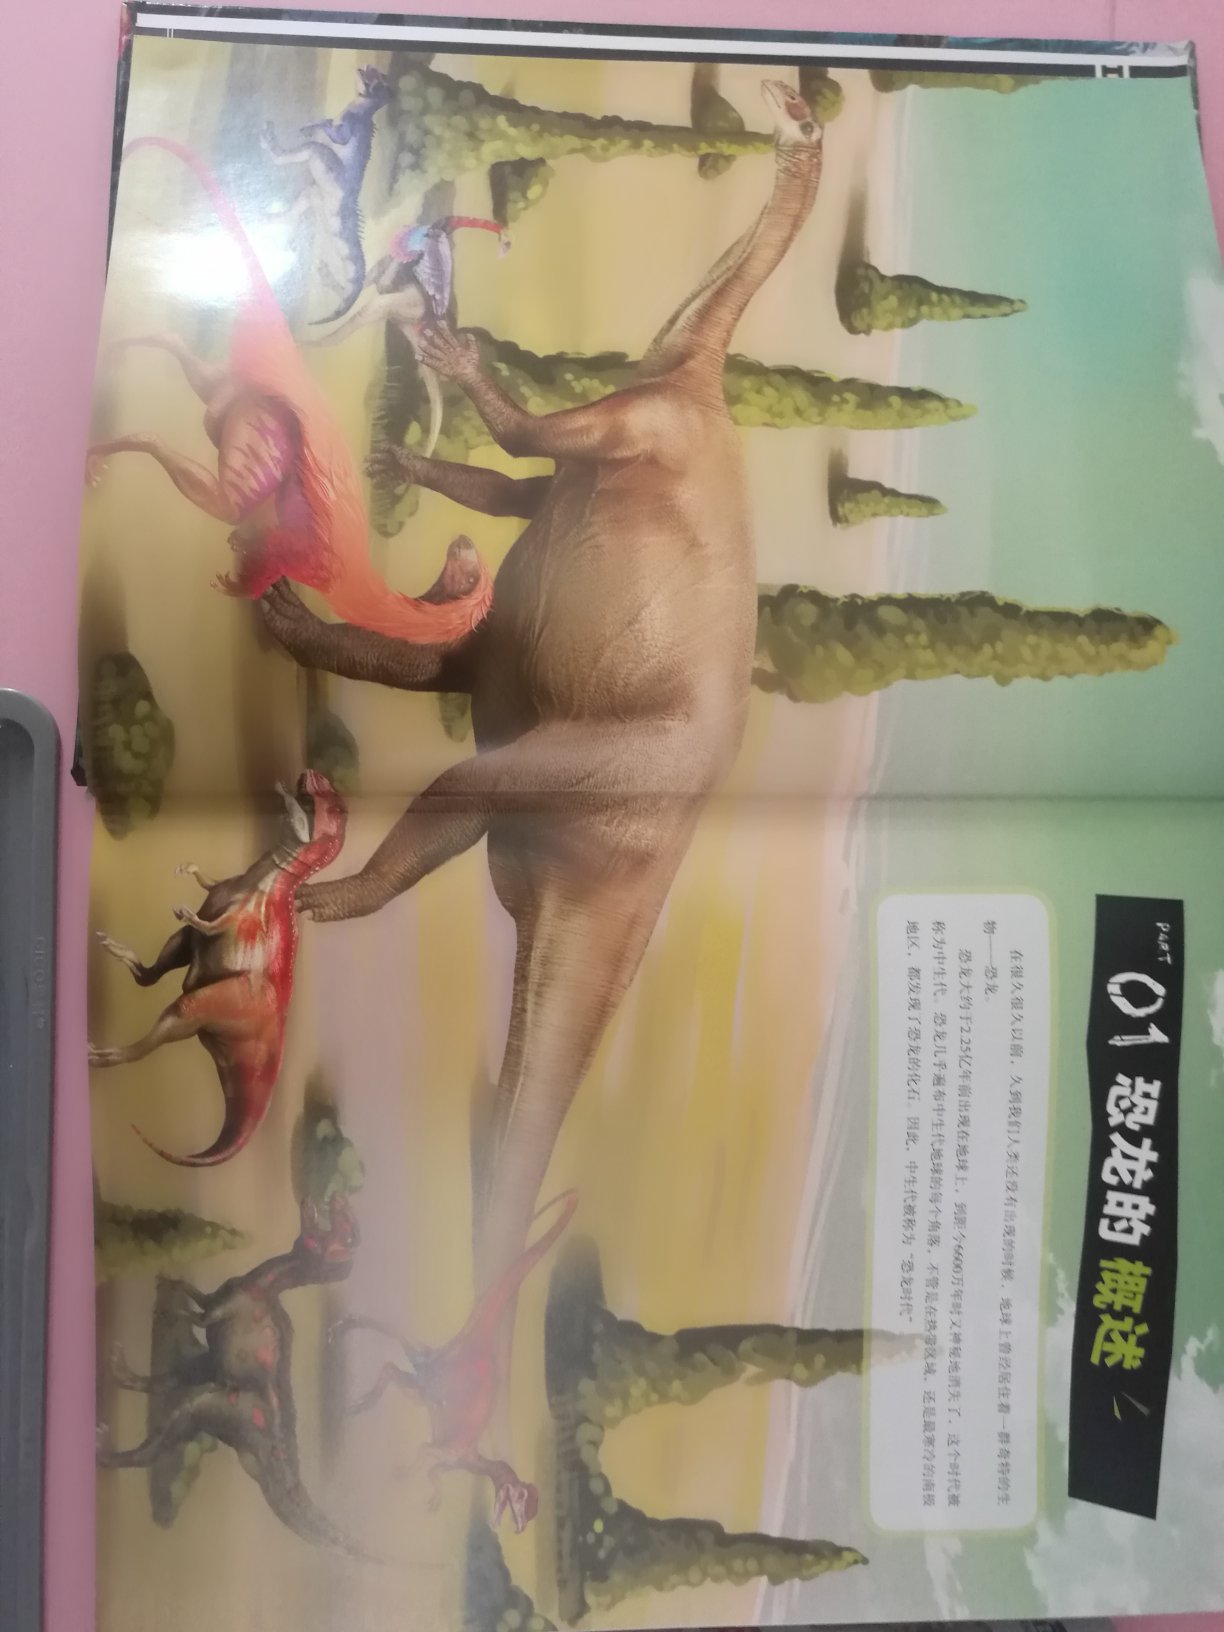 家里有个恐龙控的闺女，得到这本中国恐龙百科全书真是乐开花了。这本书实在是一本重量级的百科全书，内容特别丰富，纸质也非常好，全书厚度达4.5cm重量达到1.95KG，小孩自己拿这本书要靠抱的。全书共介绍了三百多种恐龙，每种恐龙除了有基本的概述以外还会从有恐龙档案，辞源和标本的介绍，非常全面。内页图片看起来有点3D的立体感，色彩比封面靓丽，看着很舒服。买书上准没错了，活动时候入手更超值，喜欢恐龙的放心入哦，有了这书就好比家里有了恐龙博物馆。